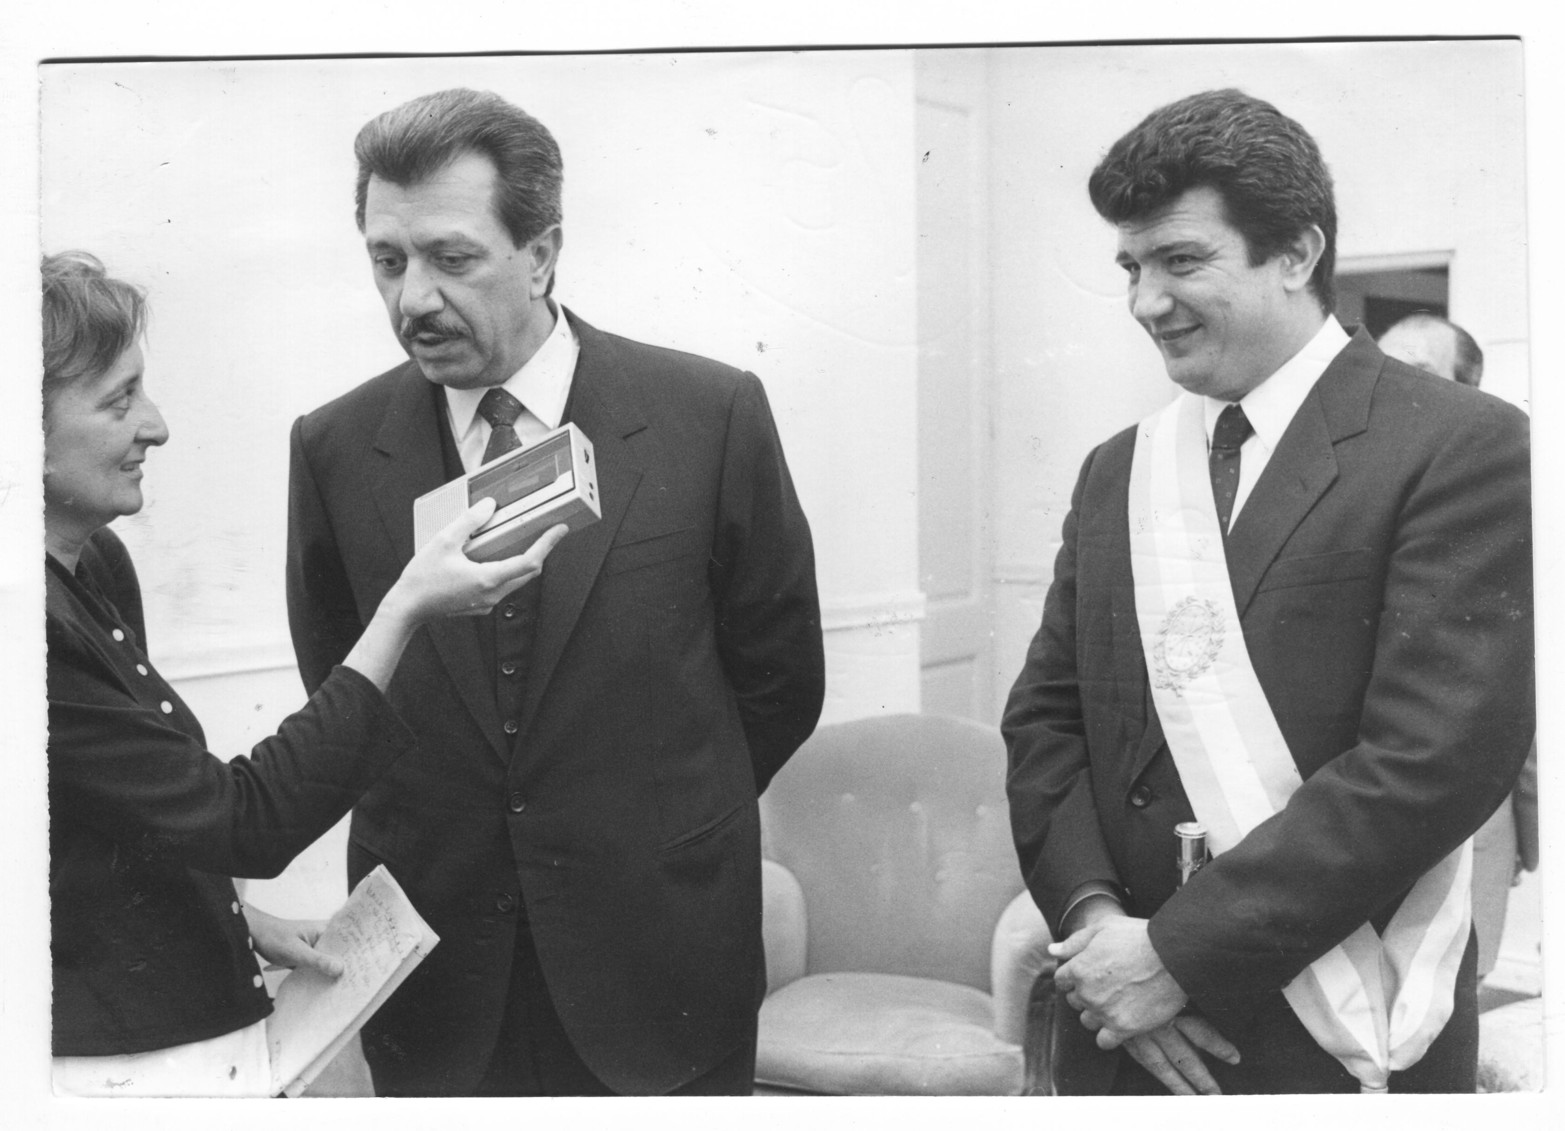  En 1987 Santa Fe volvía a elegir a un gobernador justicialista, Reviglio. La periodista y columnista de El Litoral Teresa Pandolfo entrevista al gobernador entrante y el saliente Vernet, en la Casa Gris.